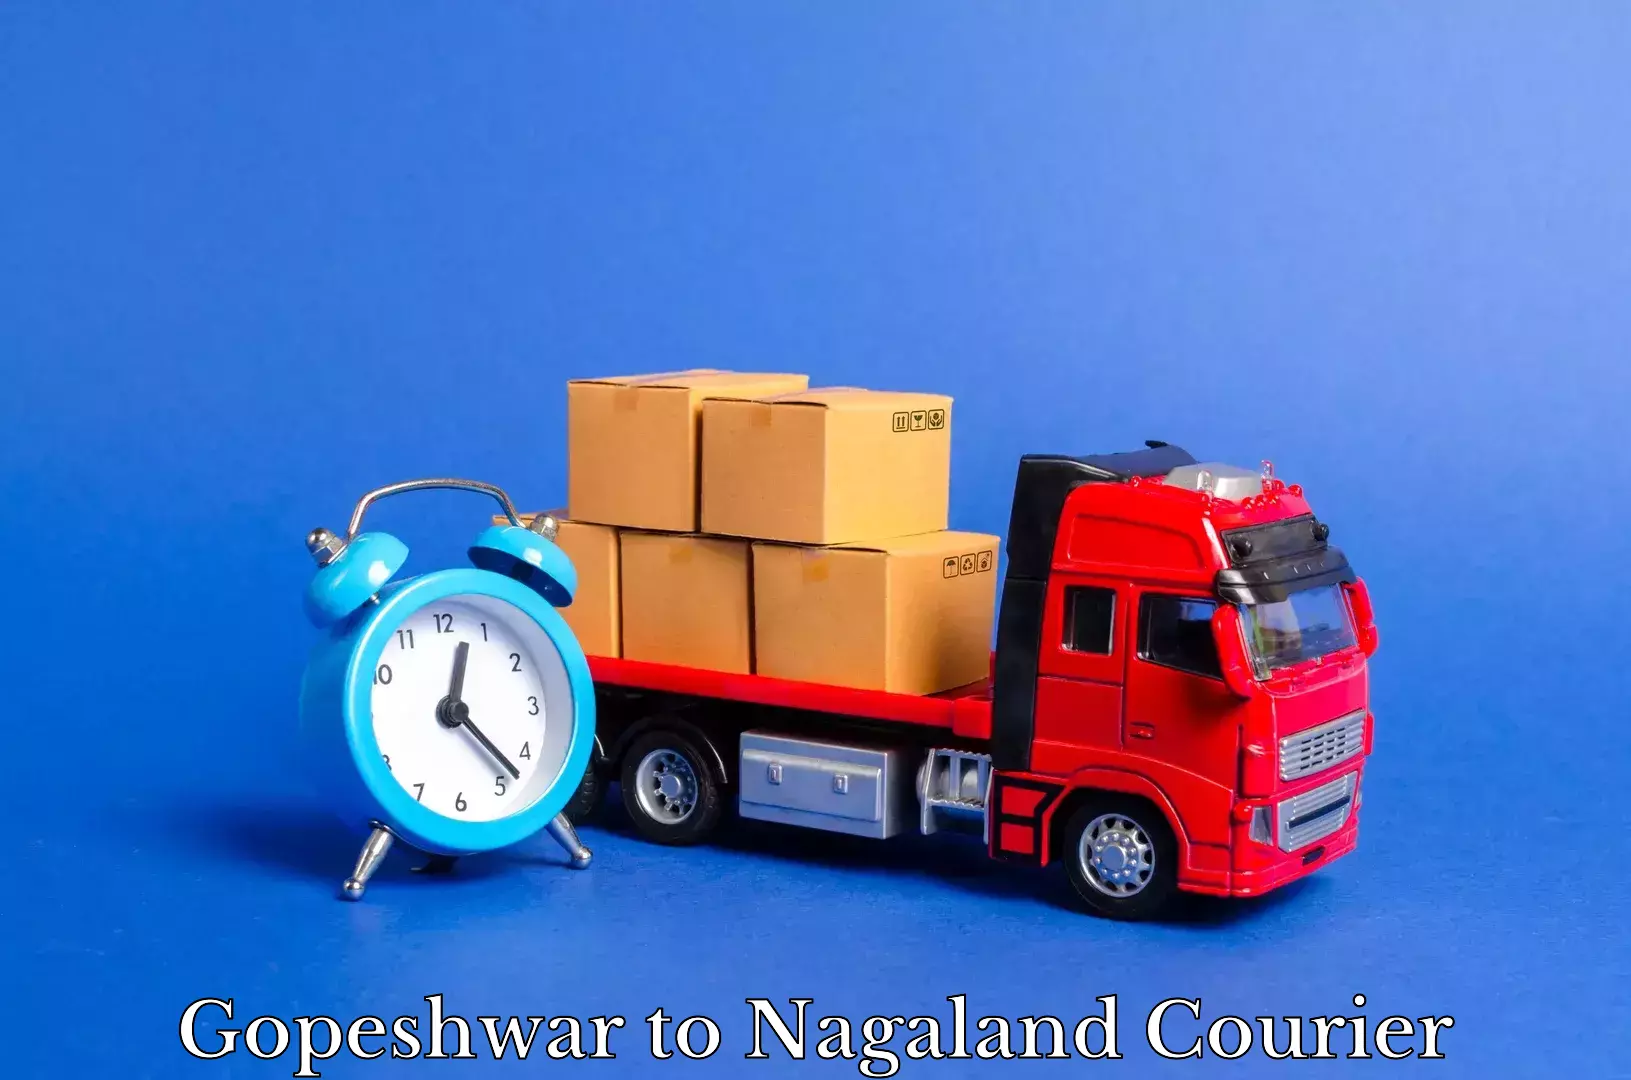 Furniture transport professionals Gopeshwar to NIT Nagaland